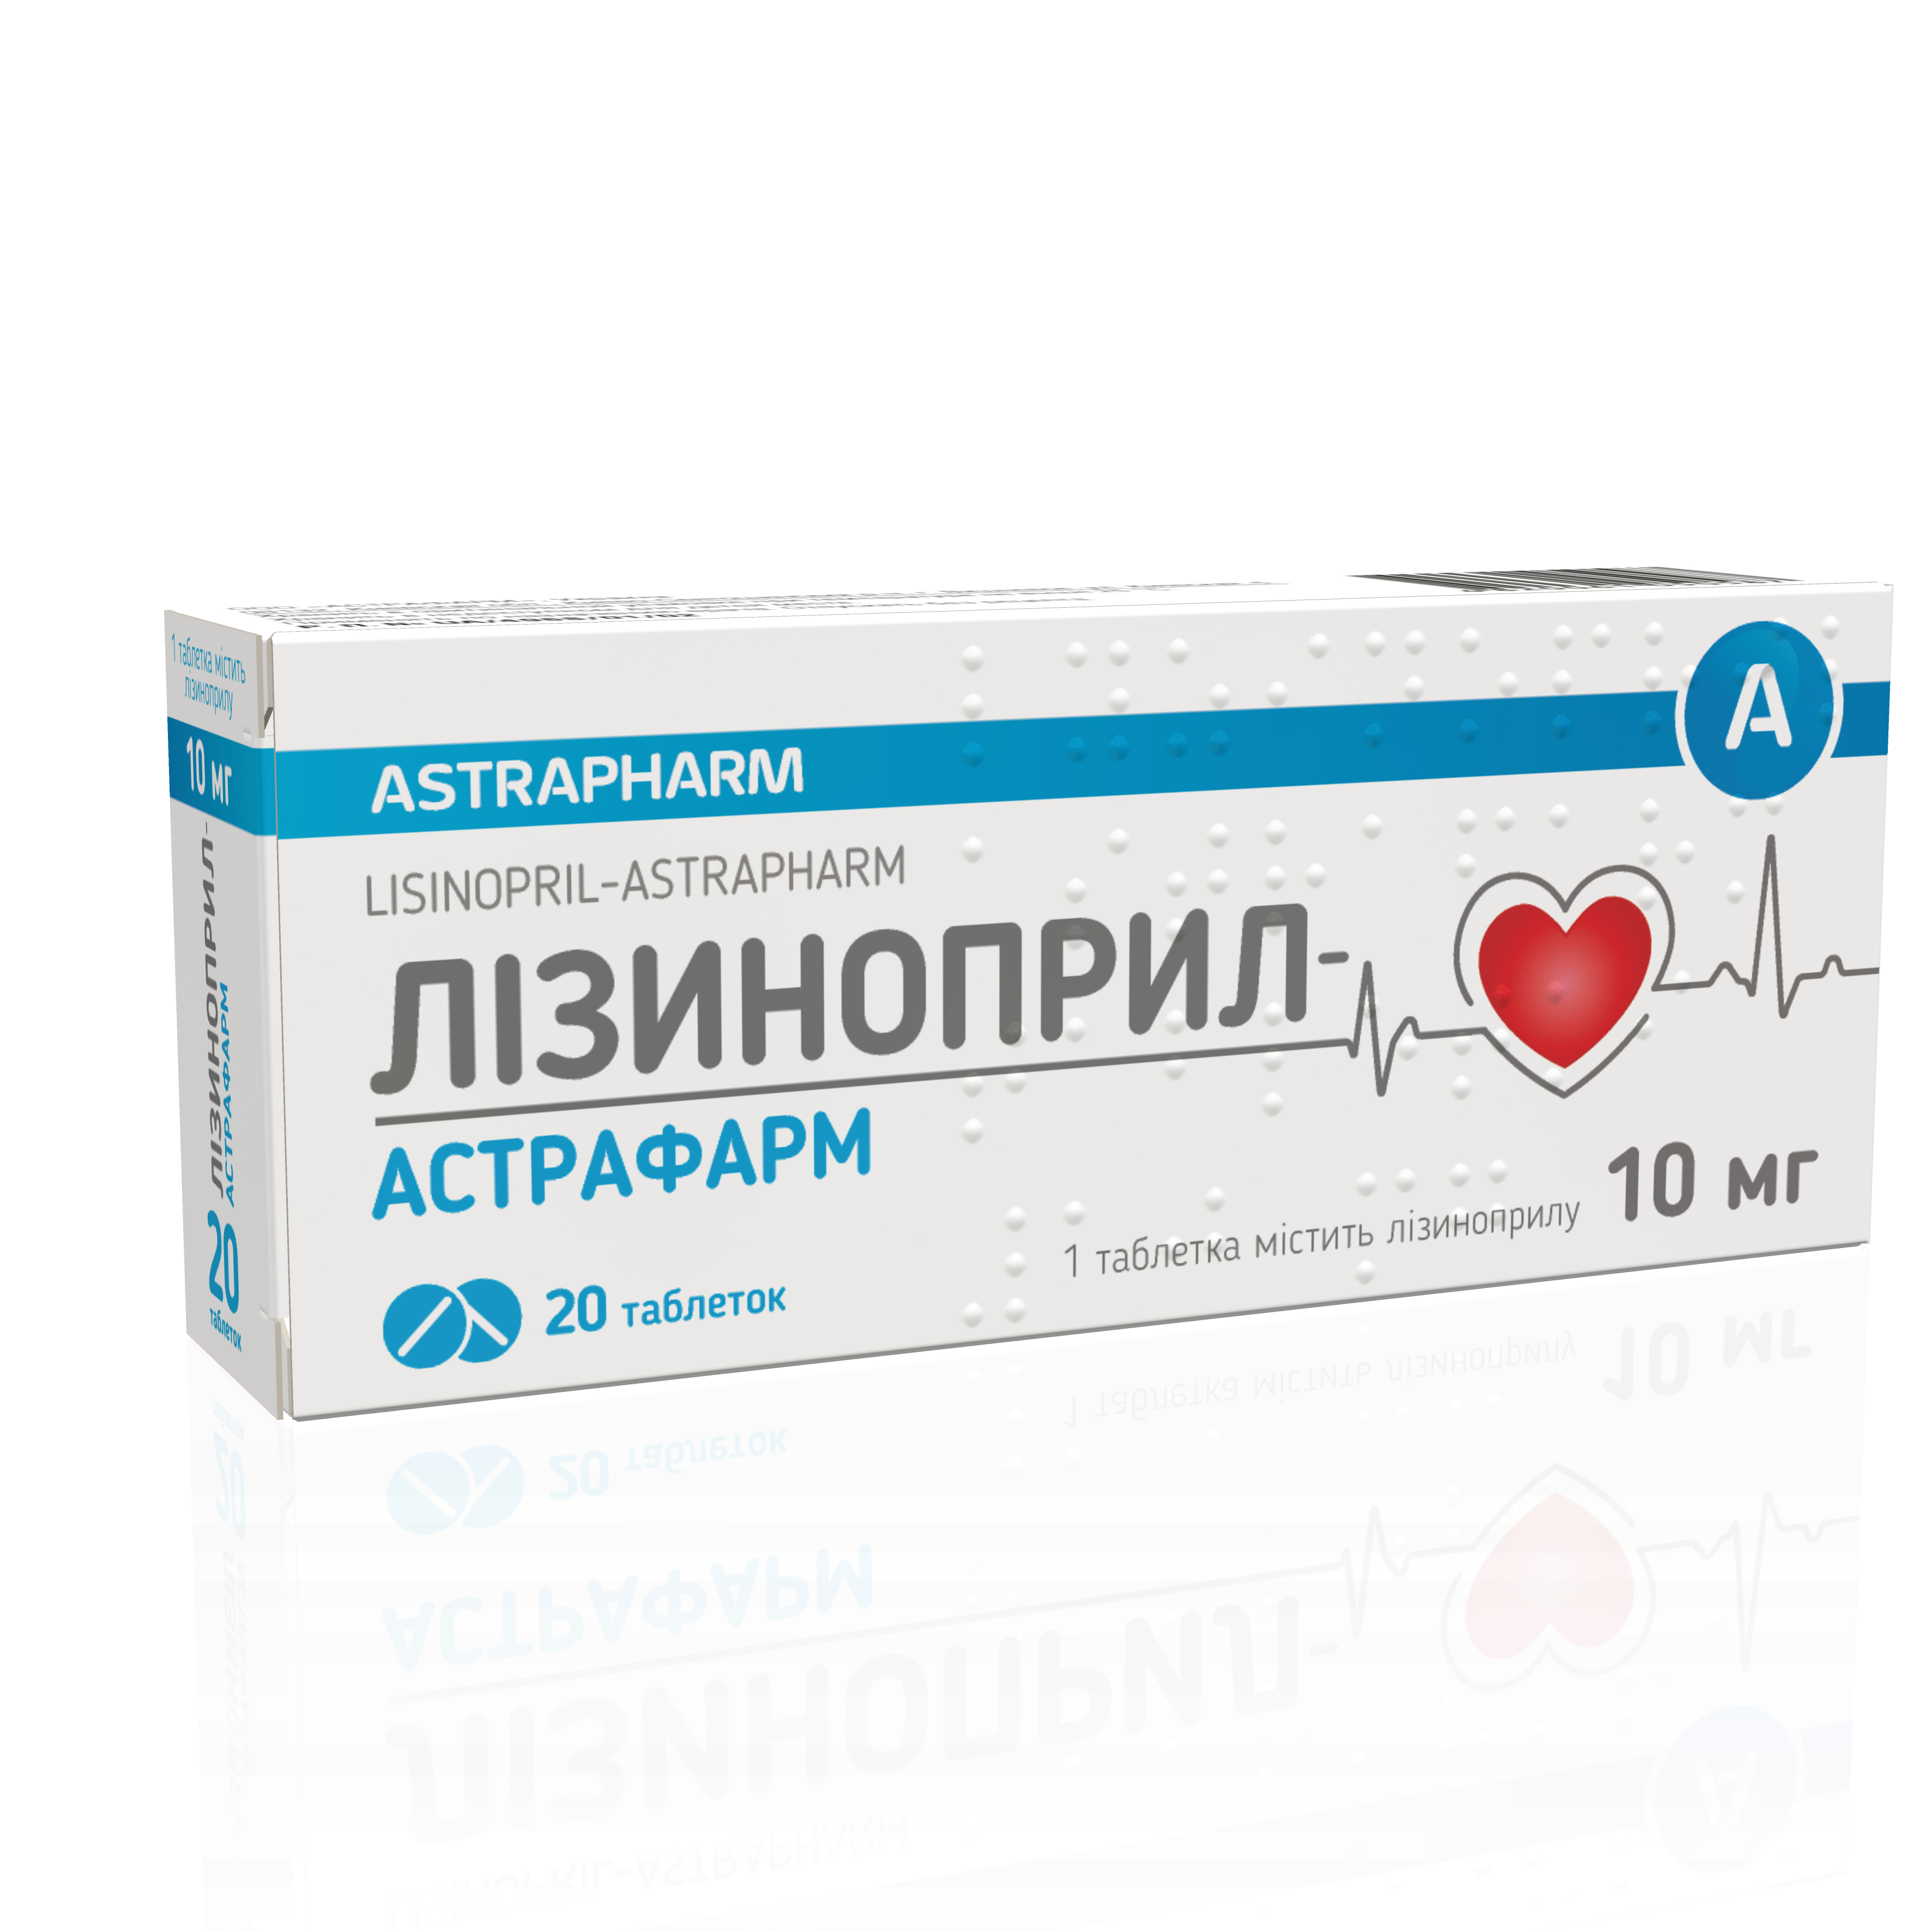 Аналоги препарата Лизиноприл таблетки по 10 мг, 20 шт. - Astrapharm: по .